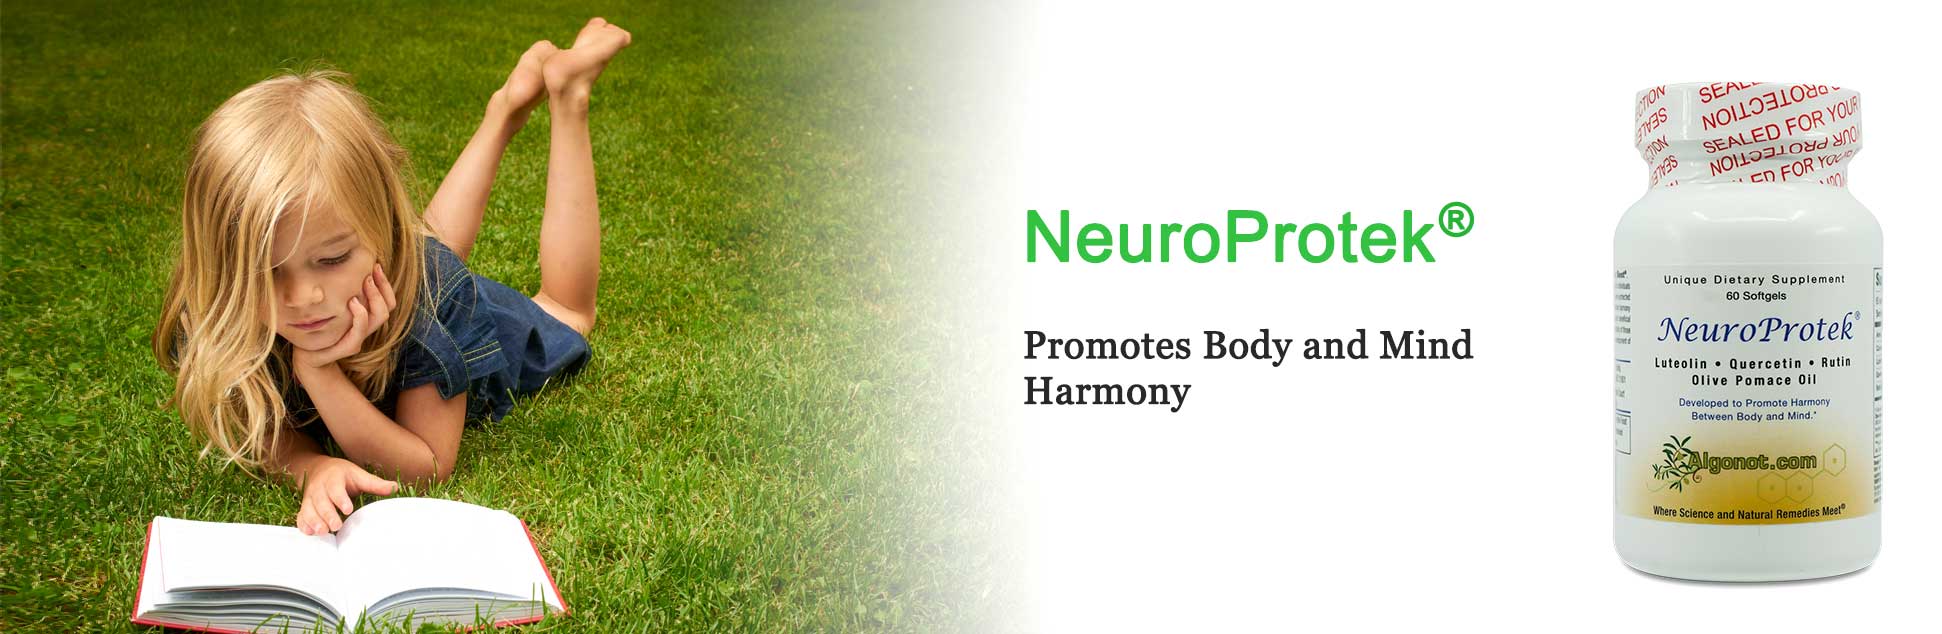 NeuroProtek-hero-new